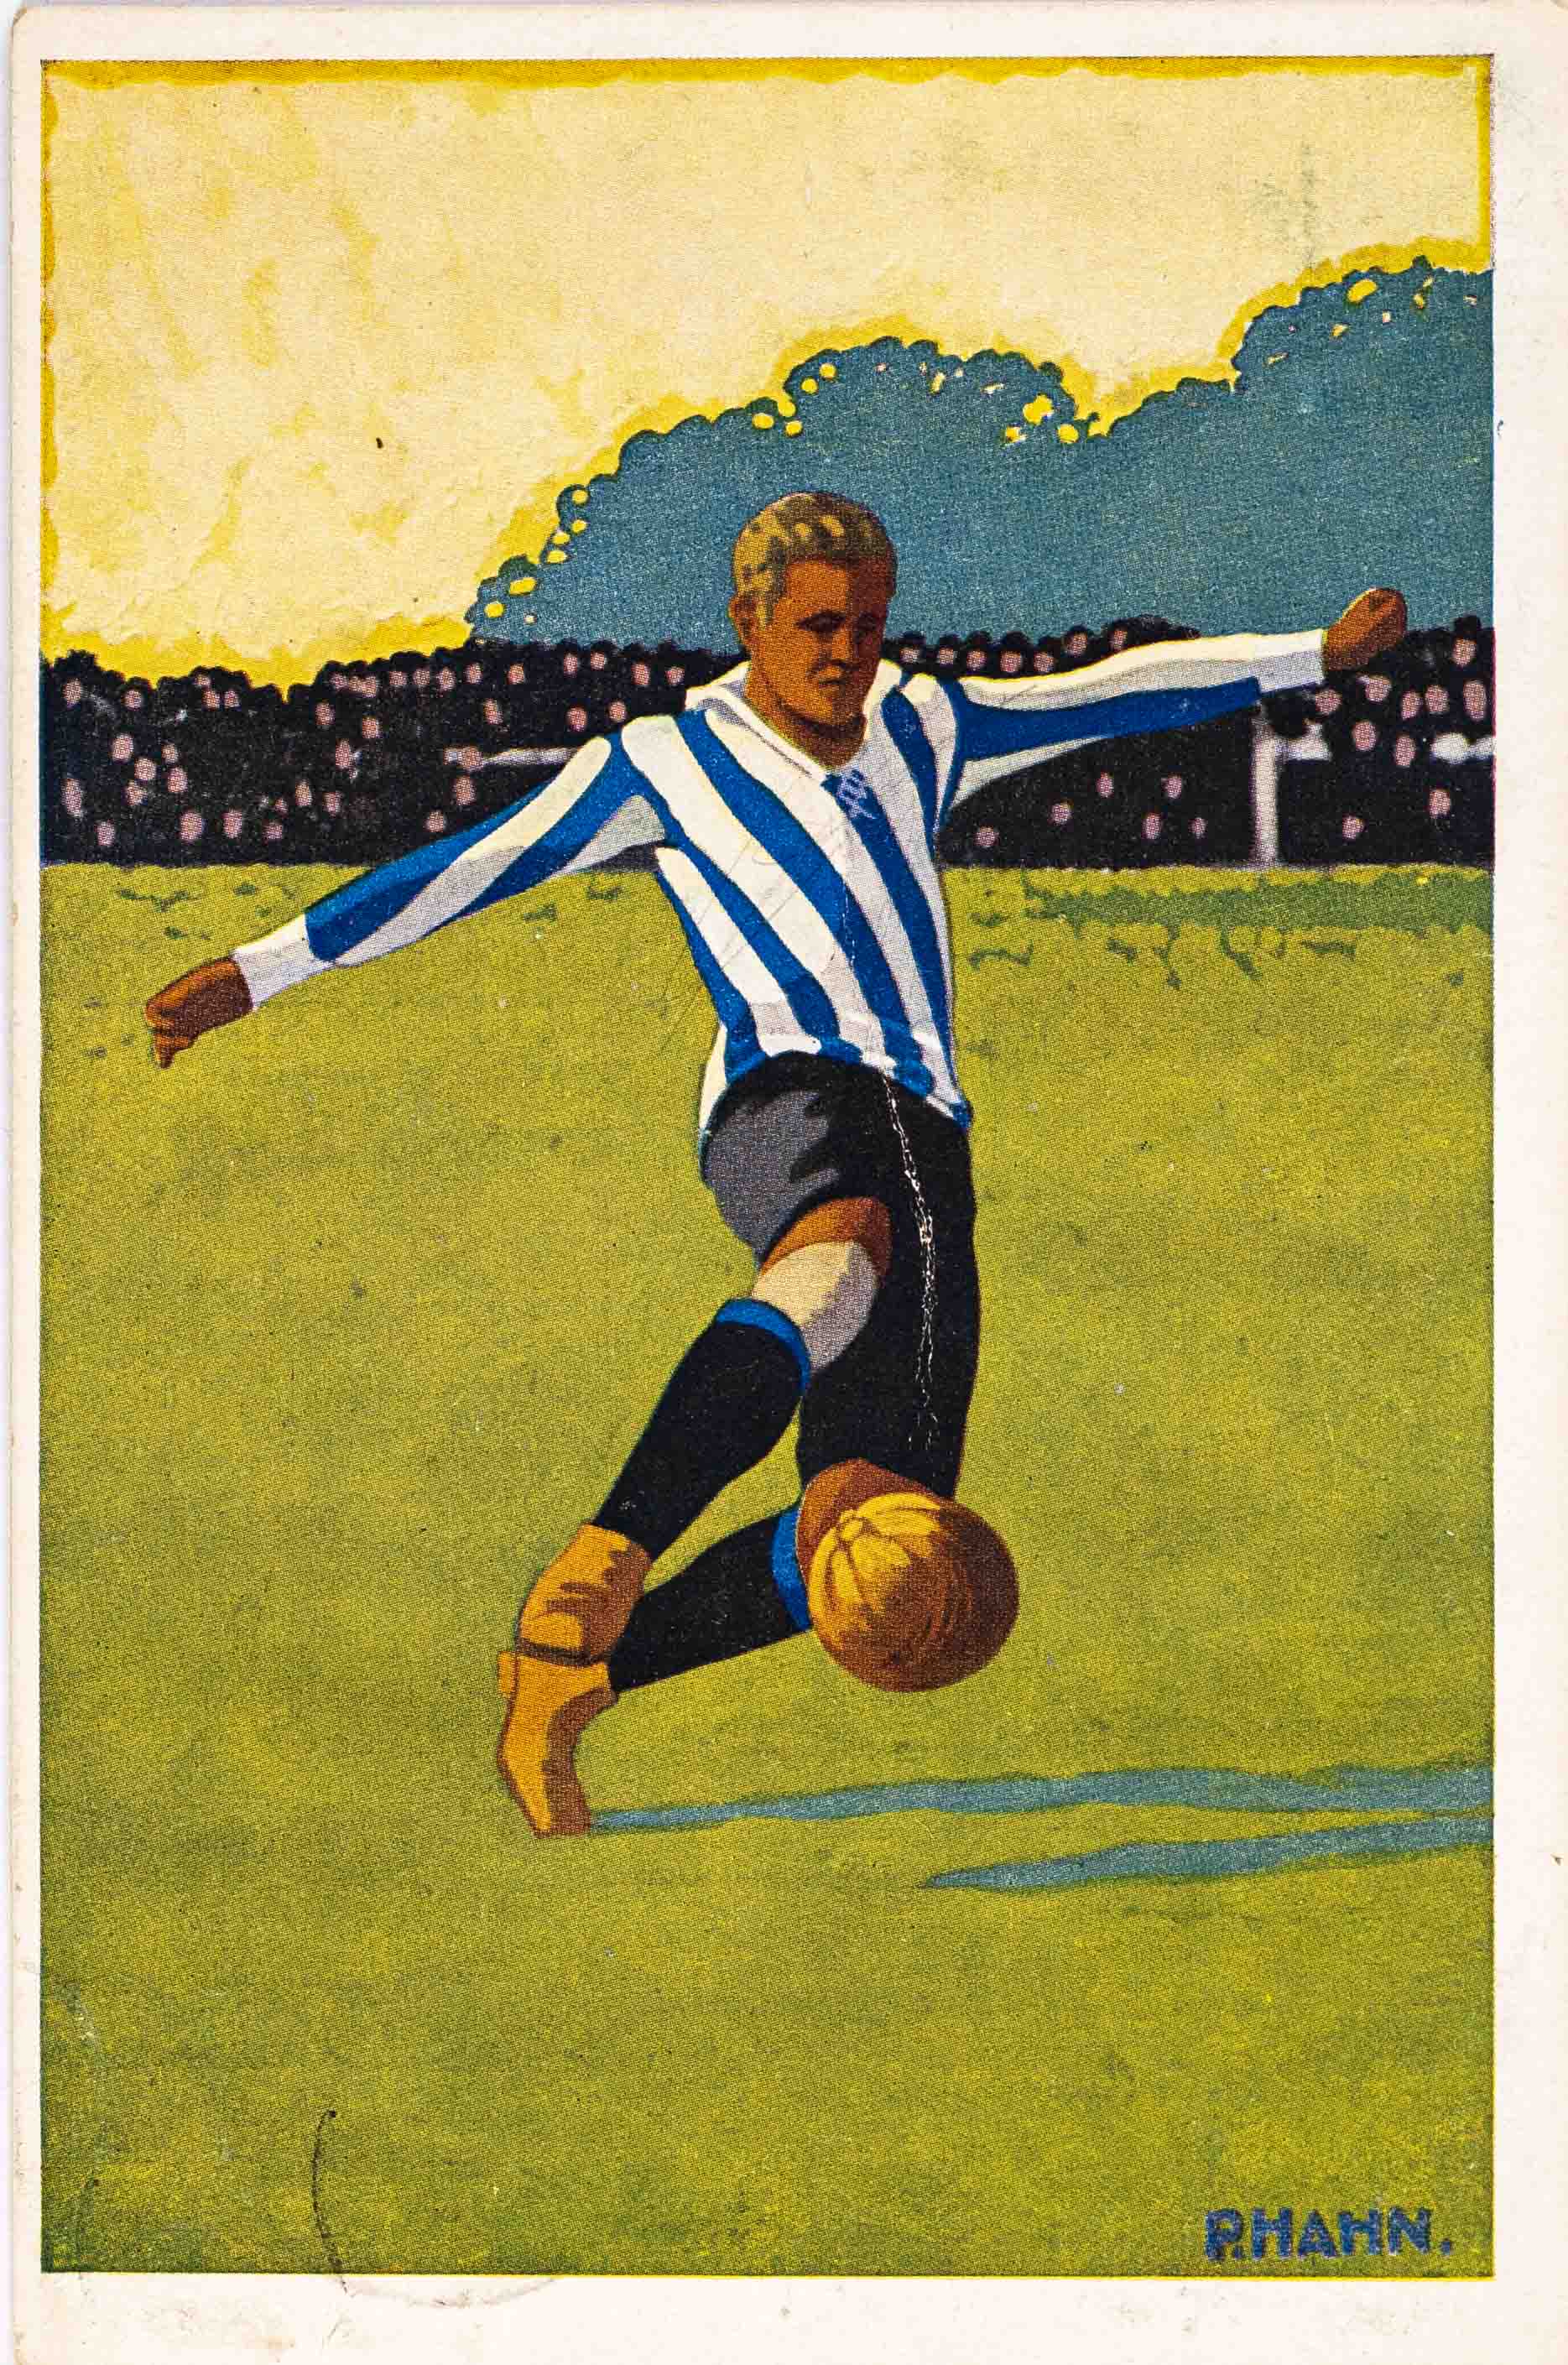 Pohlednice humor - Fotbal, Rhahn, 1928